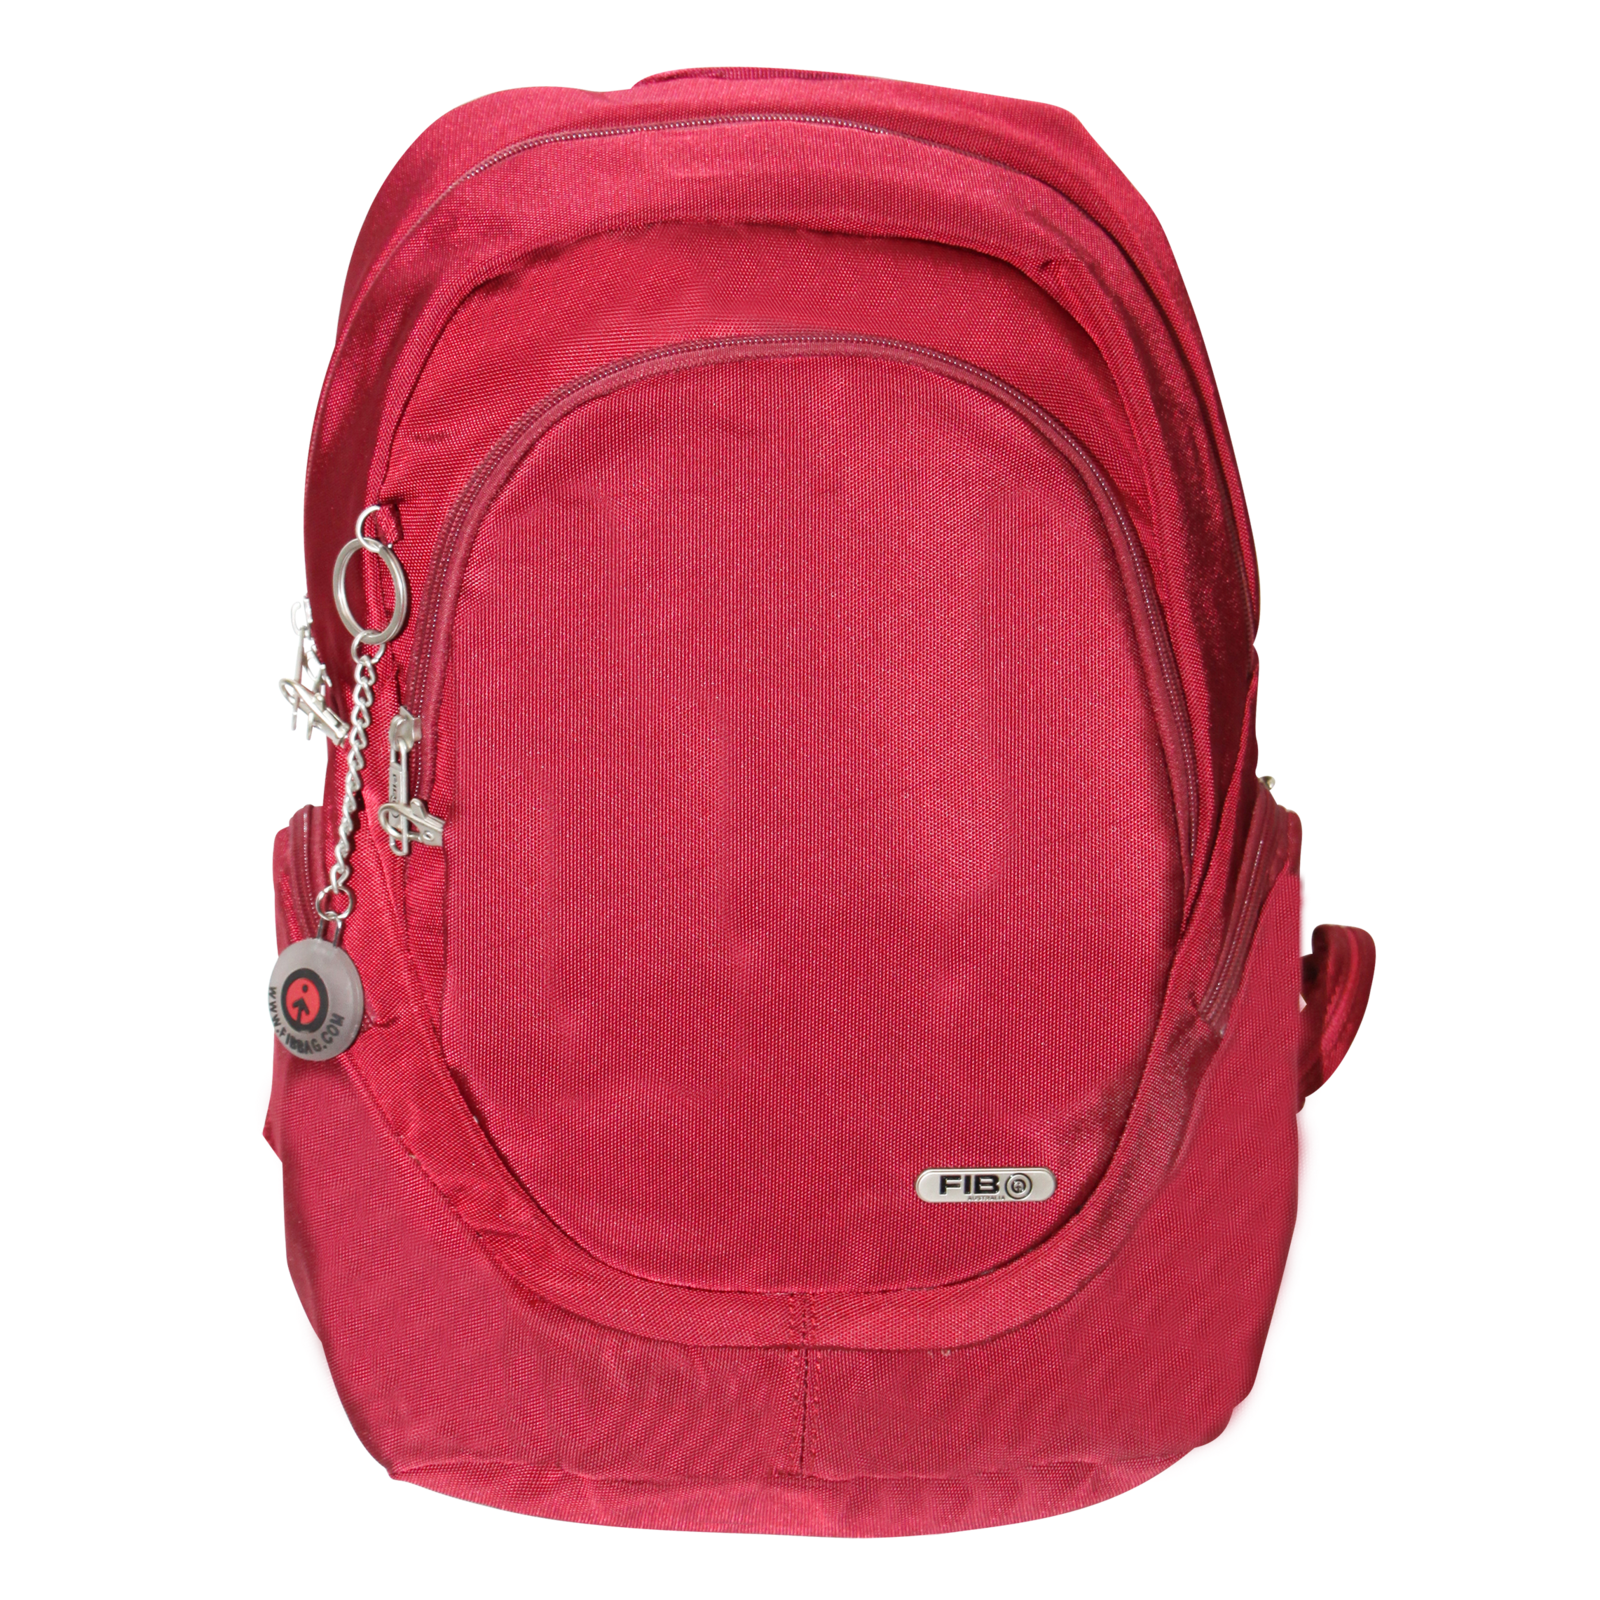 Mens Backpack Travel Rucksack Shoulder Bag - Burgundy